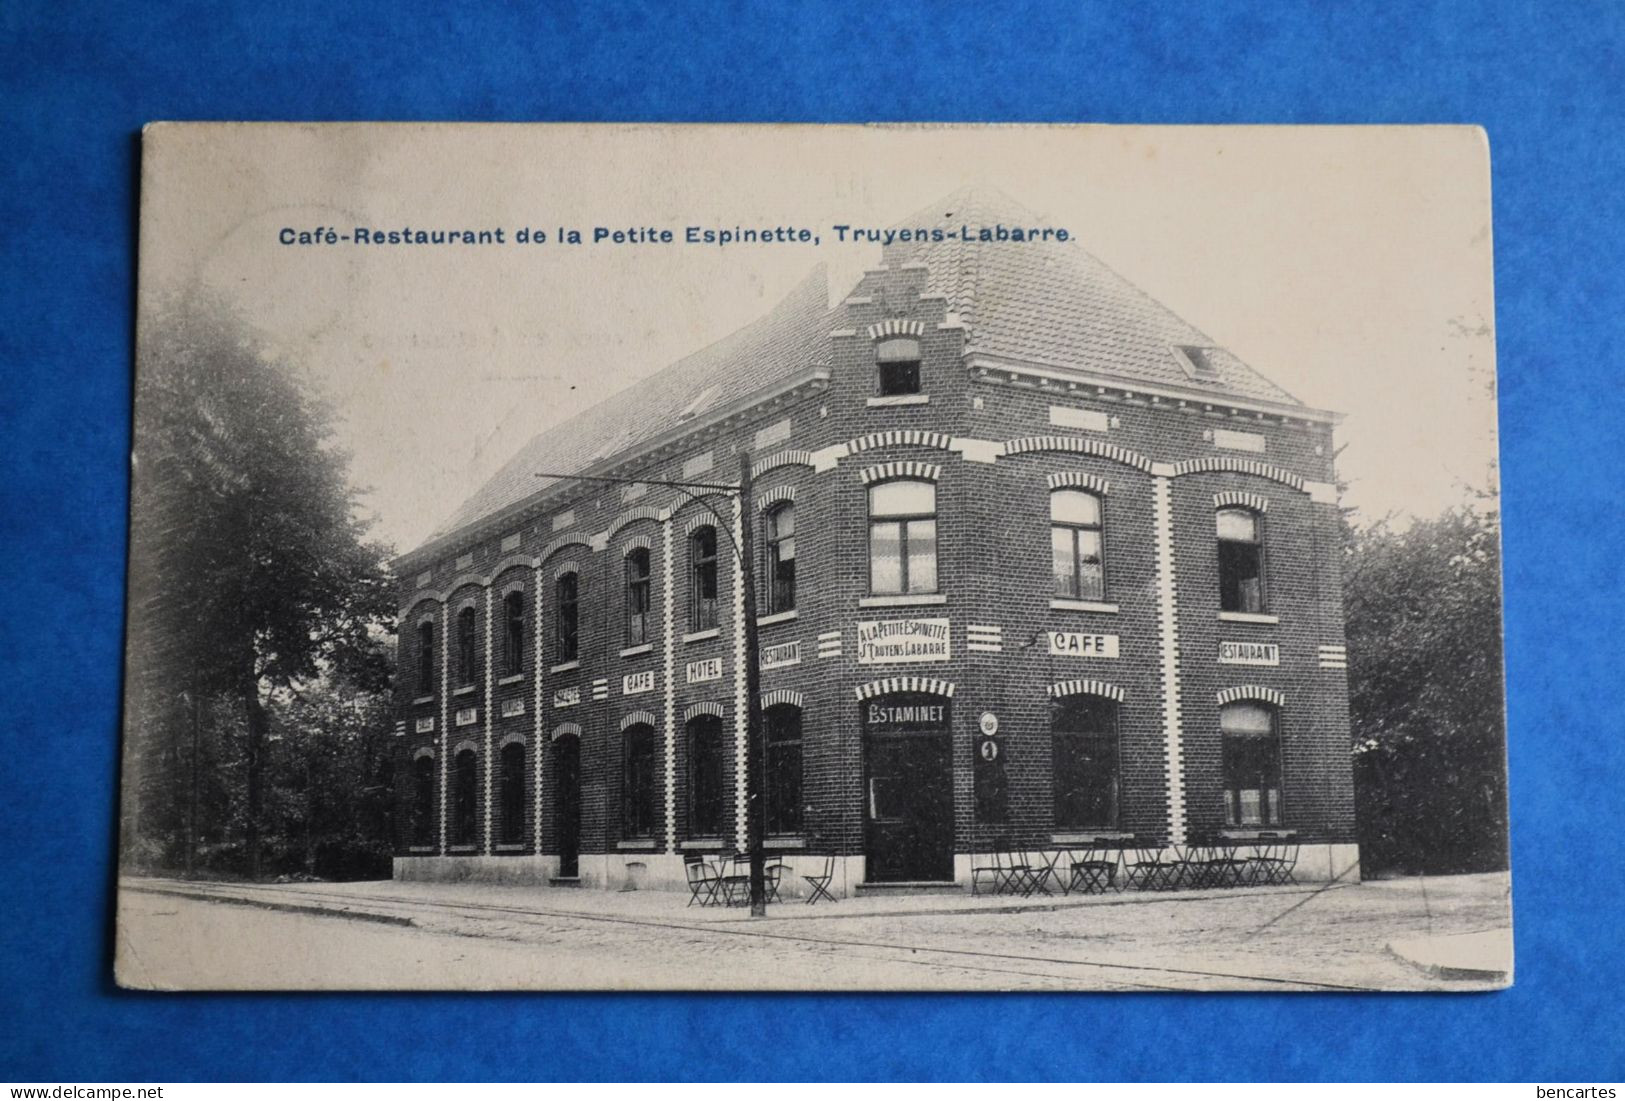 Uccle 1910: Café-Restaurant De La Petite Espinette, Truyens-Labarre - Uccle - Ukkel